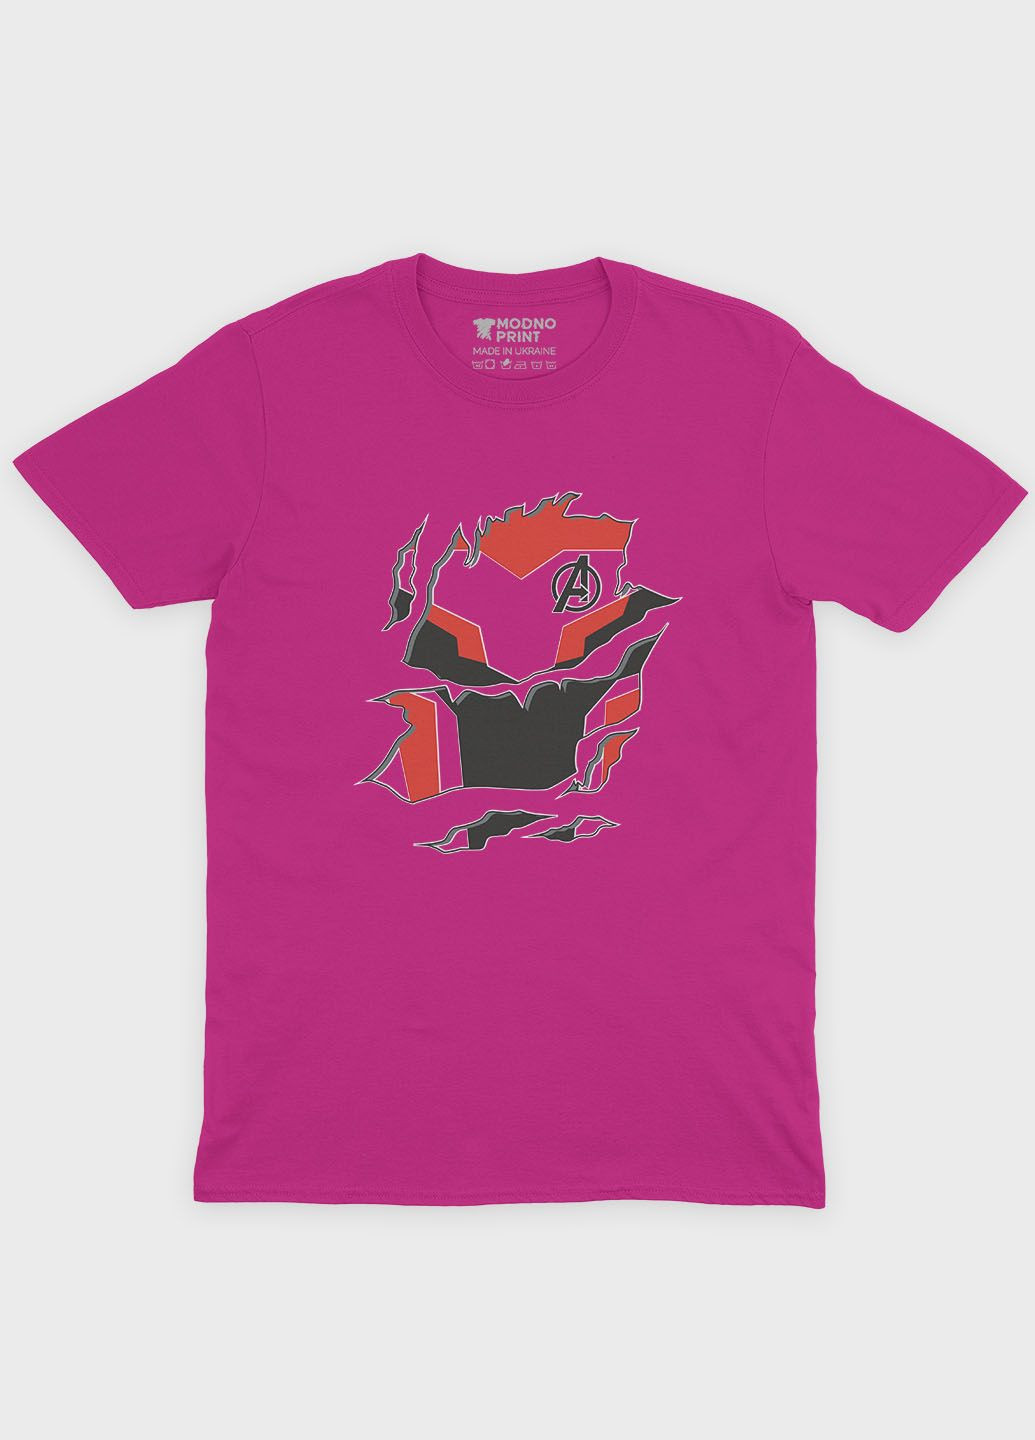 Розовая демисезонная футболка для девочки с принтом супергероя - железный человек (ts001-1-fuxj-006-016-006-g) Modno